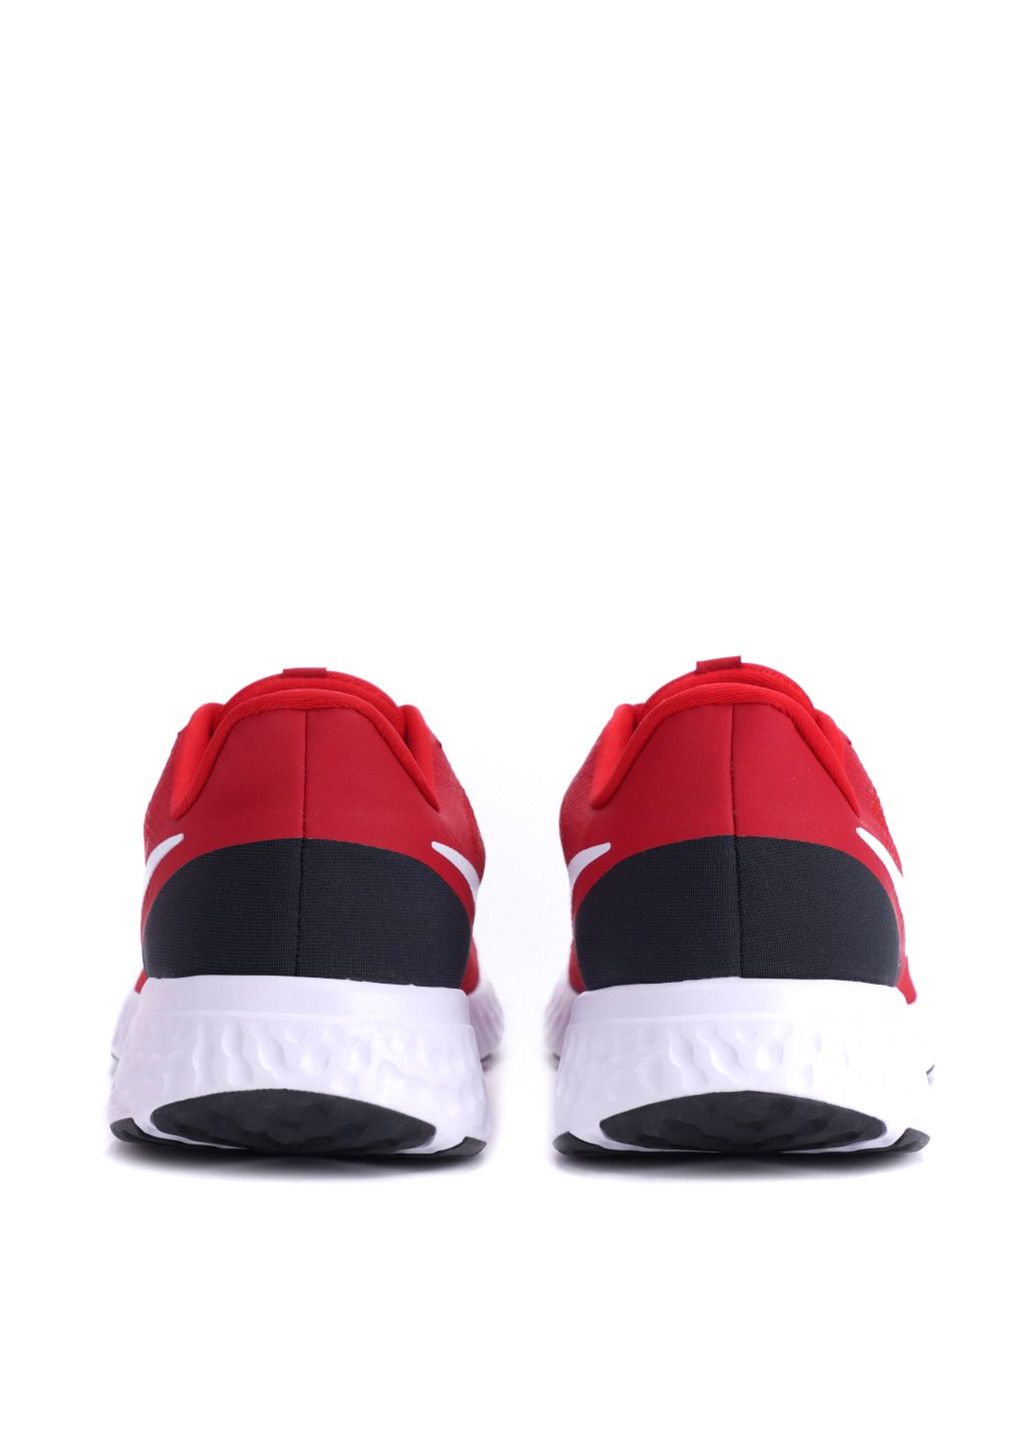 Красные всесезонные кроссовки Nike Revolution 5